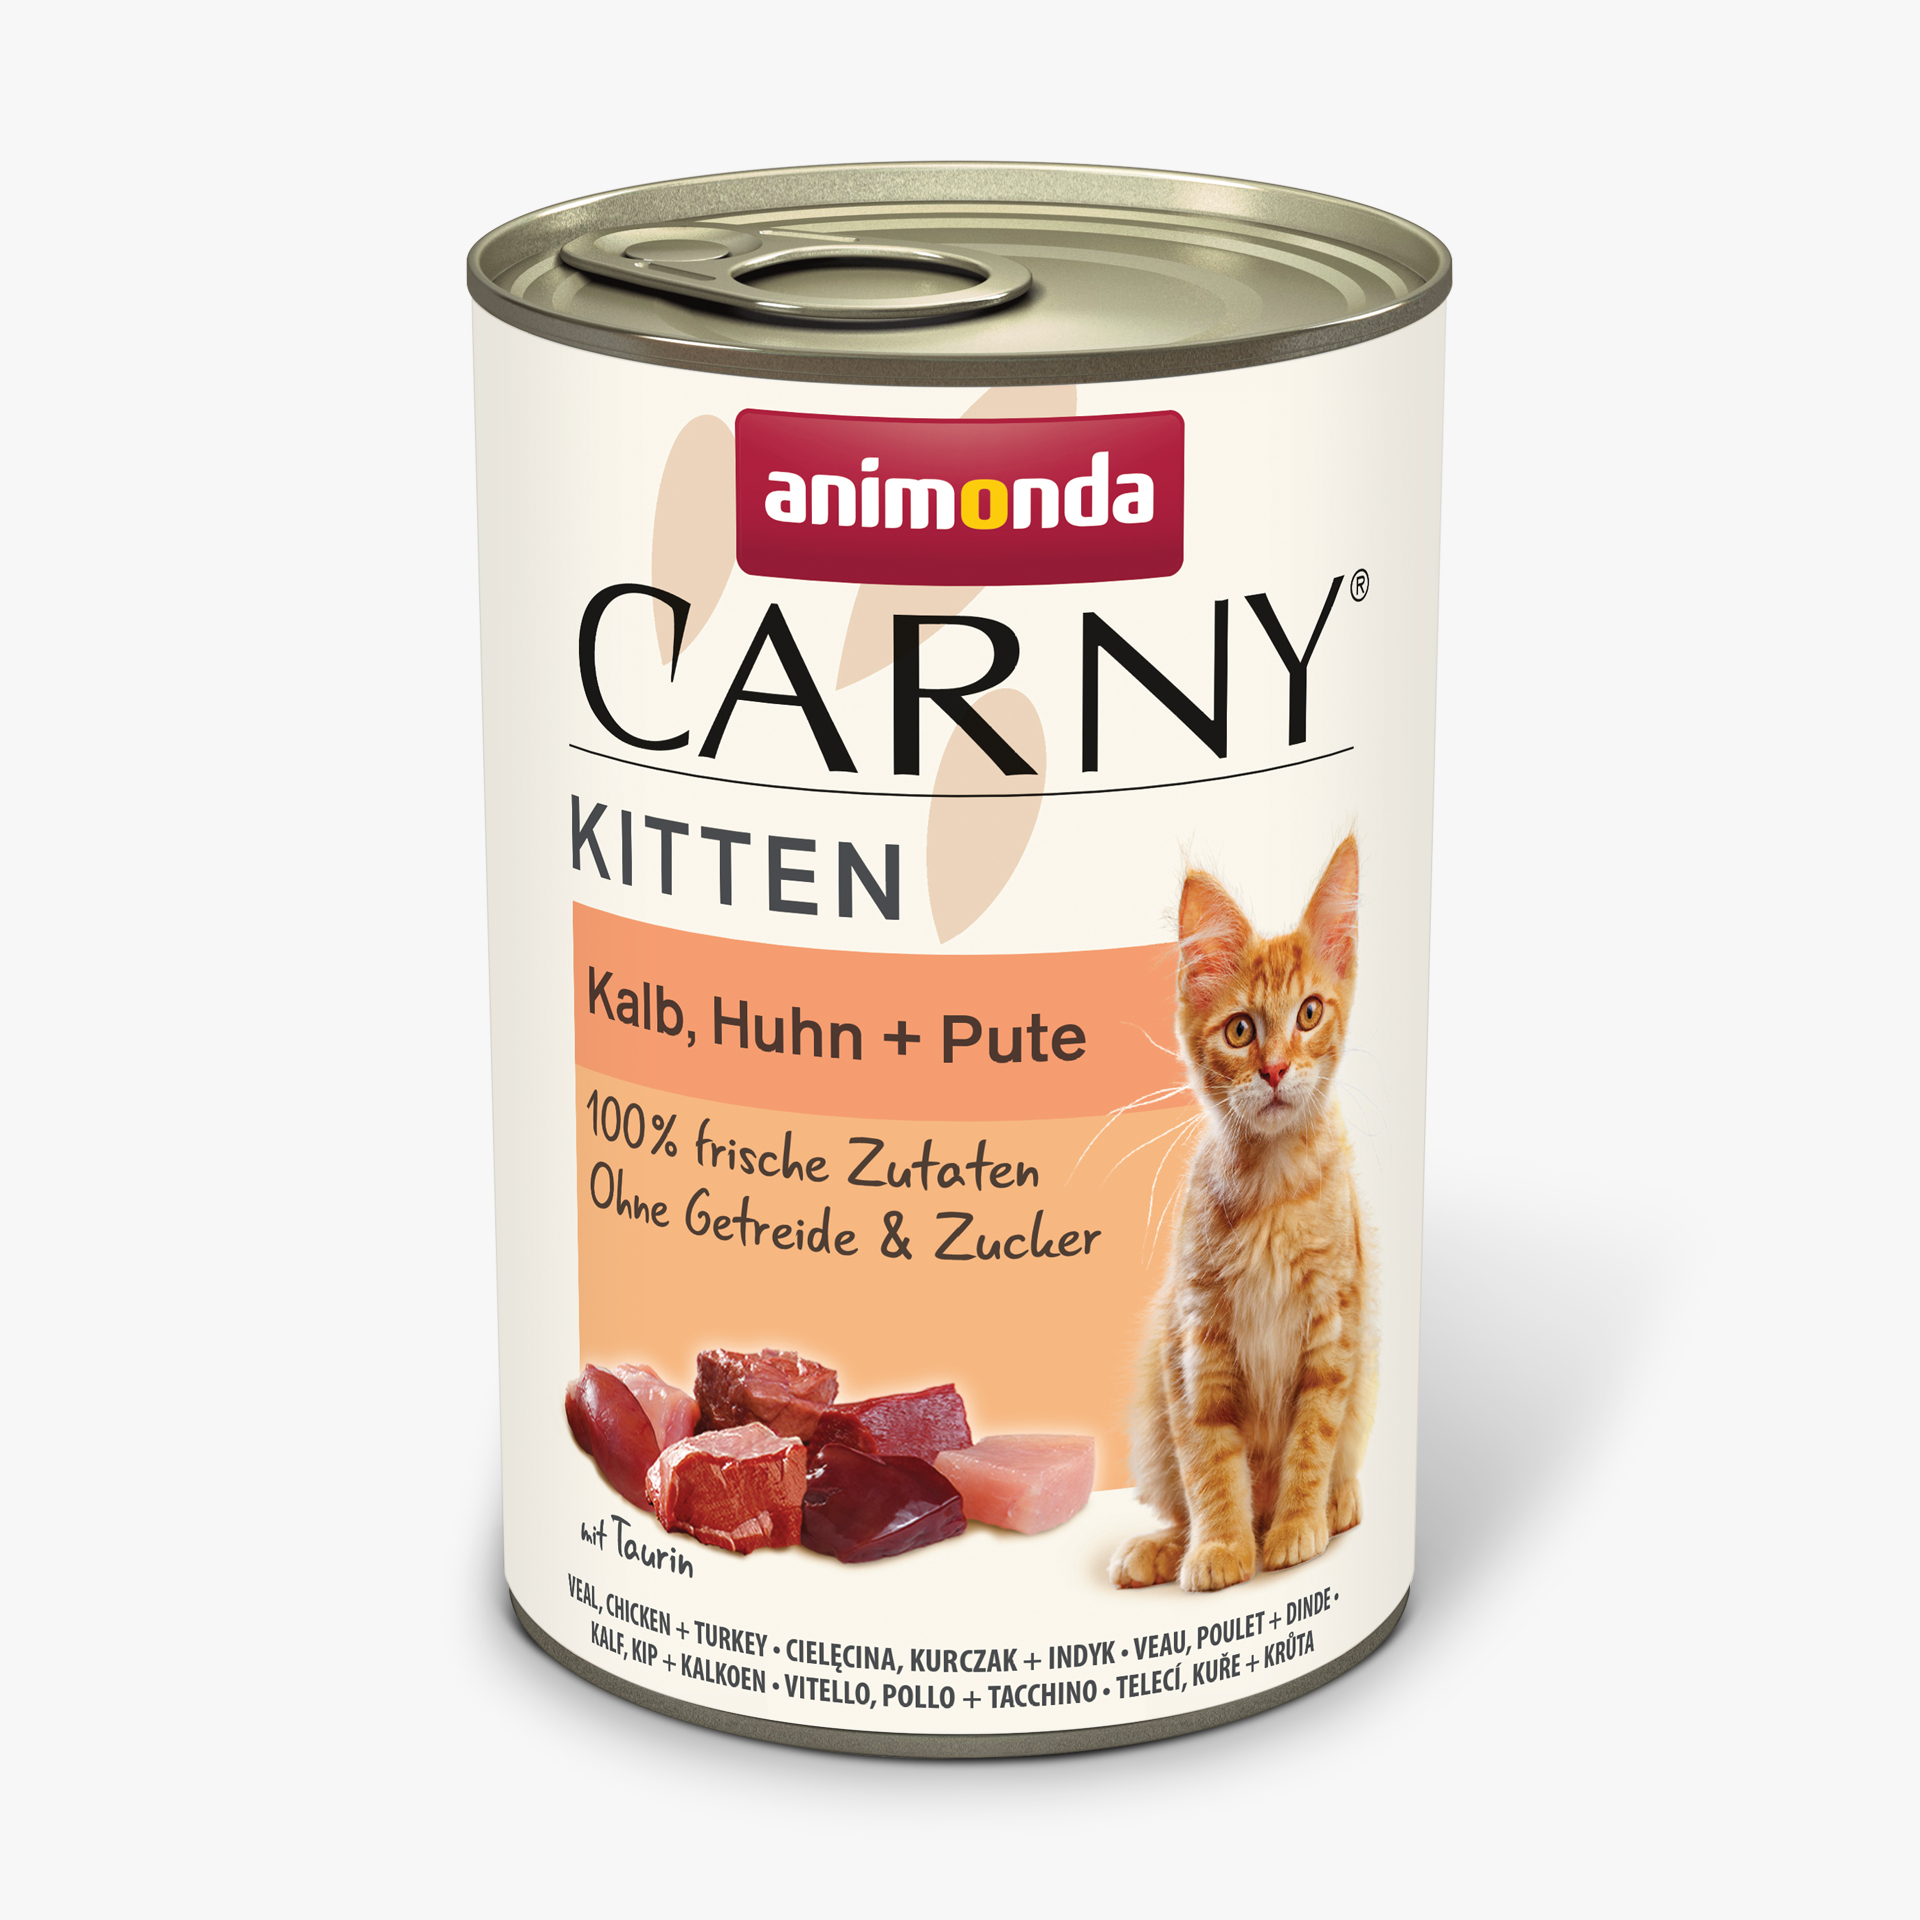 Carny Kitten Kalb, Huhn + Pute